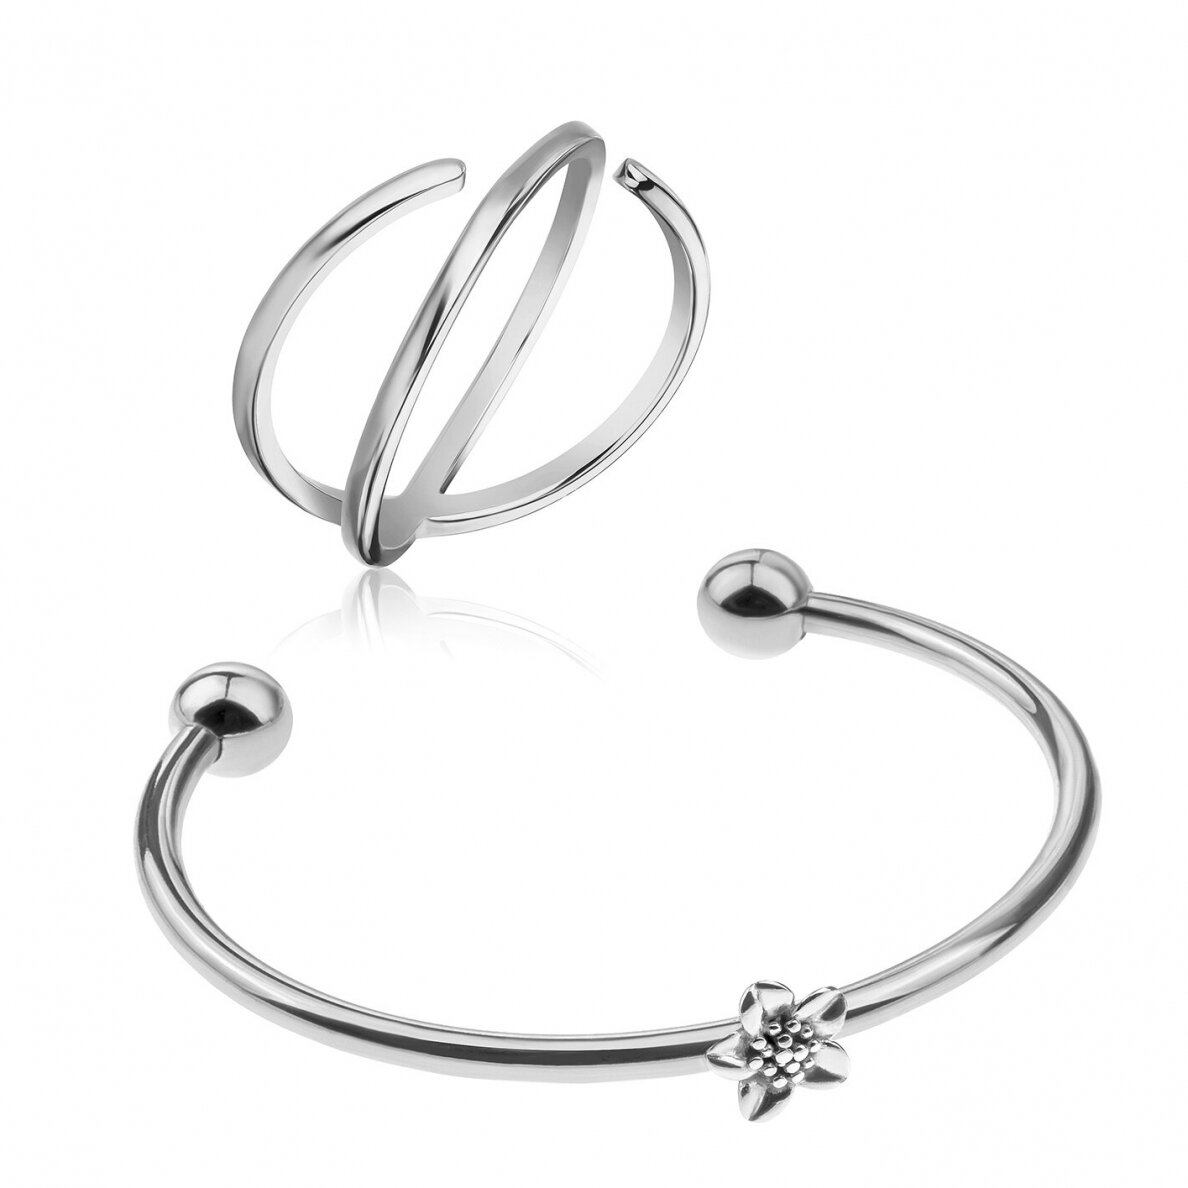 Emily Westwood Něžná sada ocelových šperků WS103S (prsten, náramek)